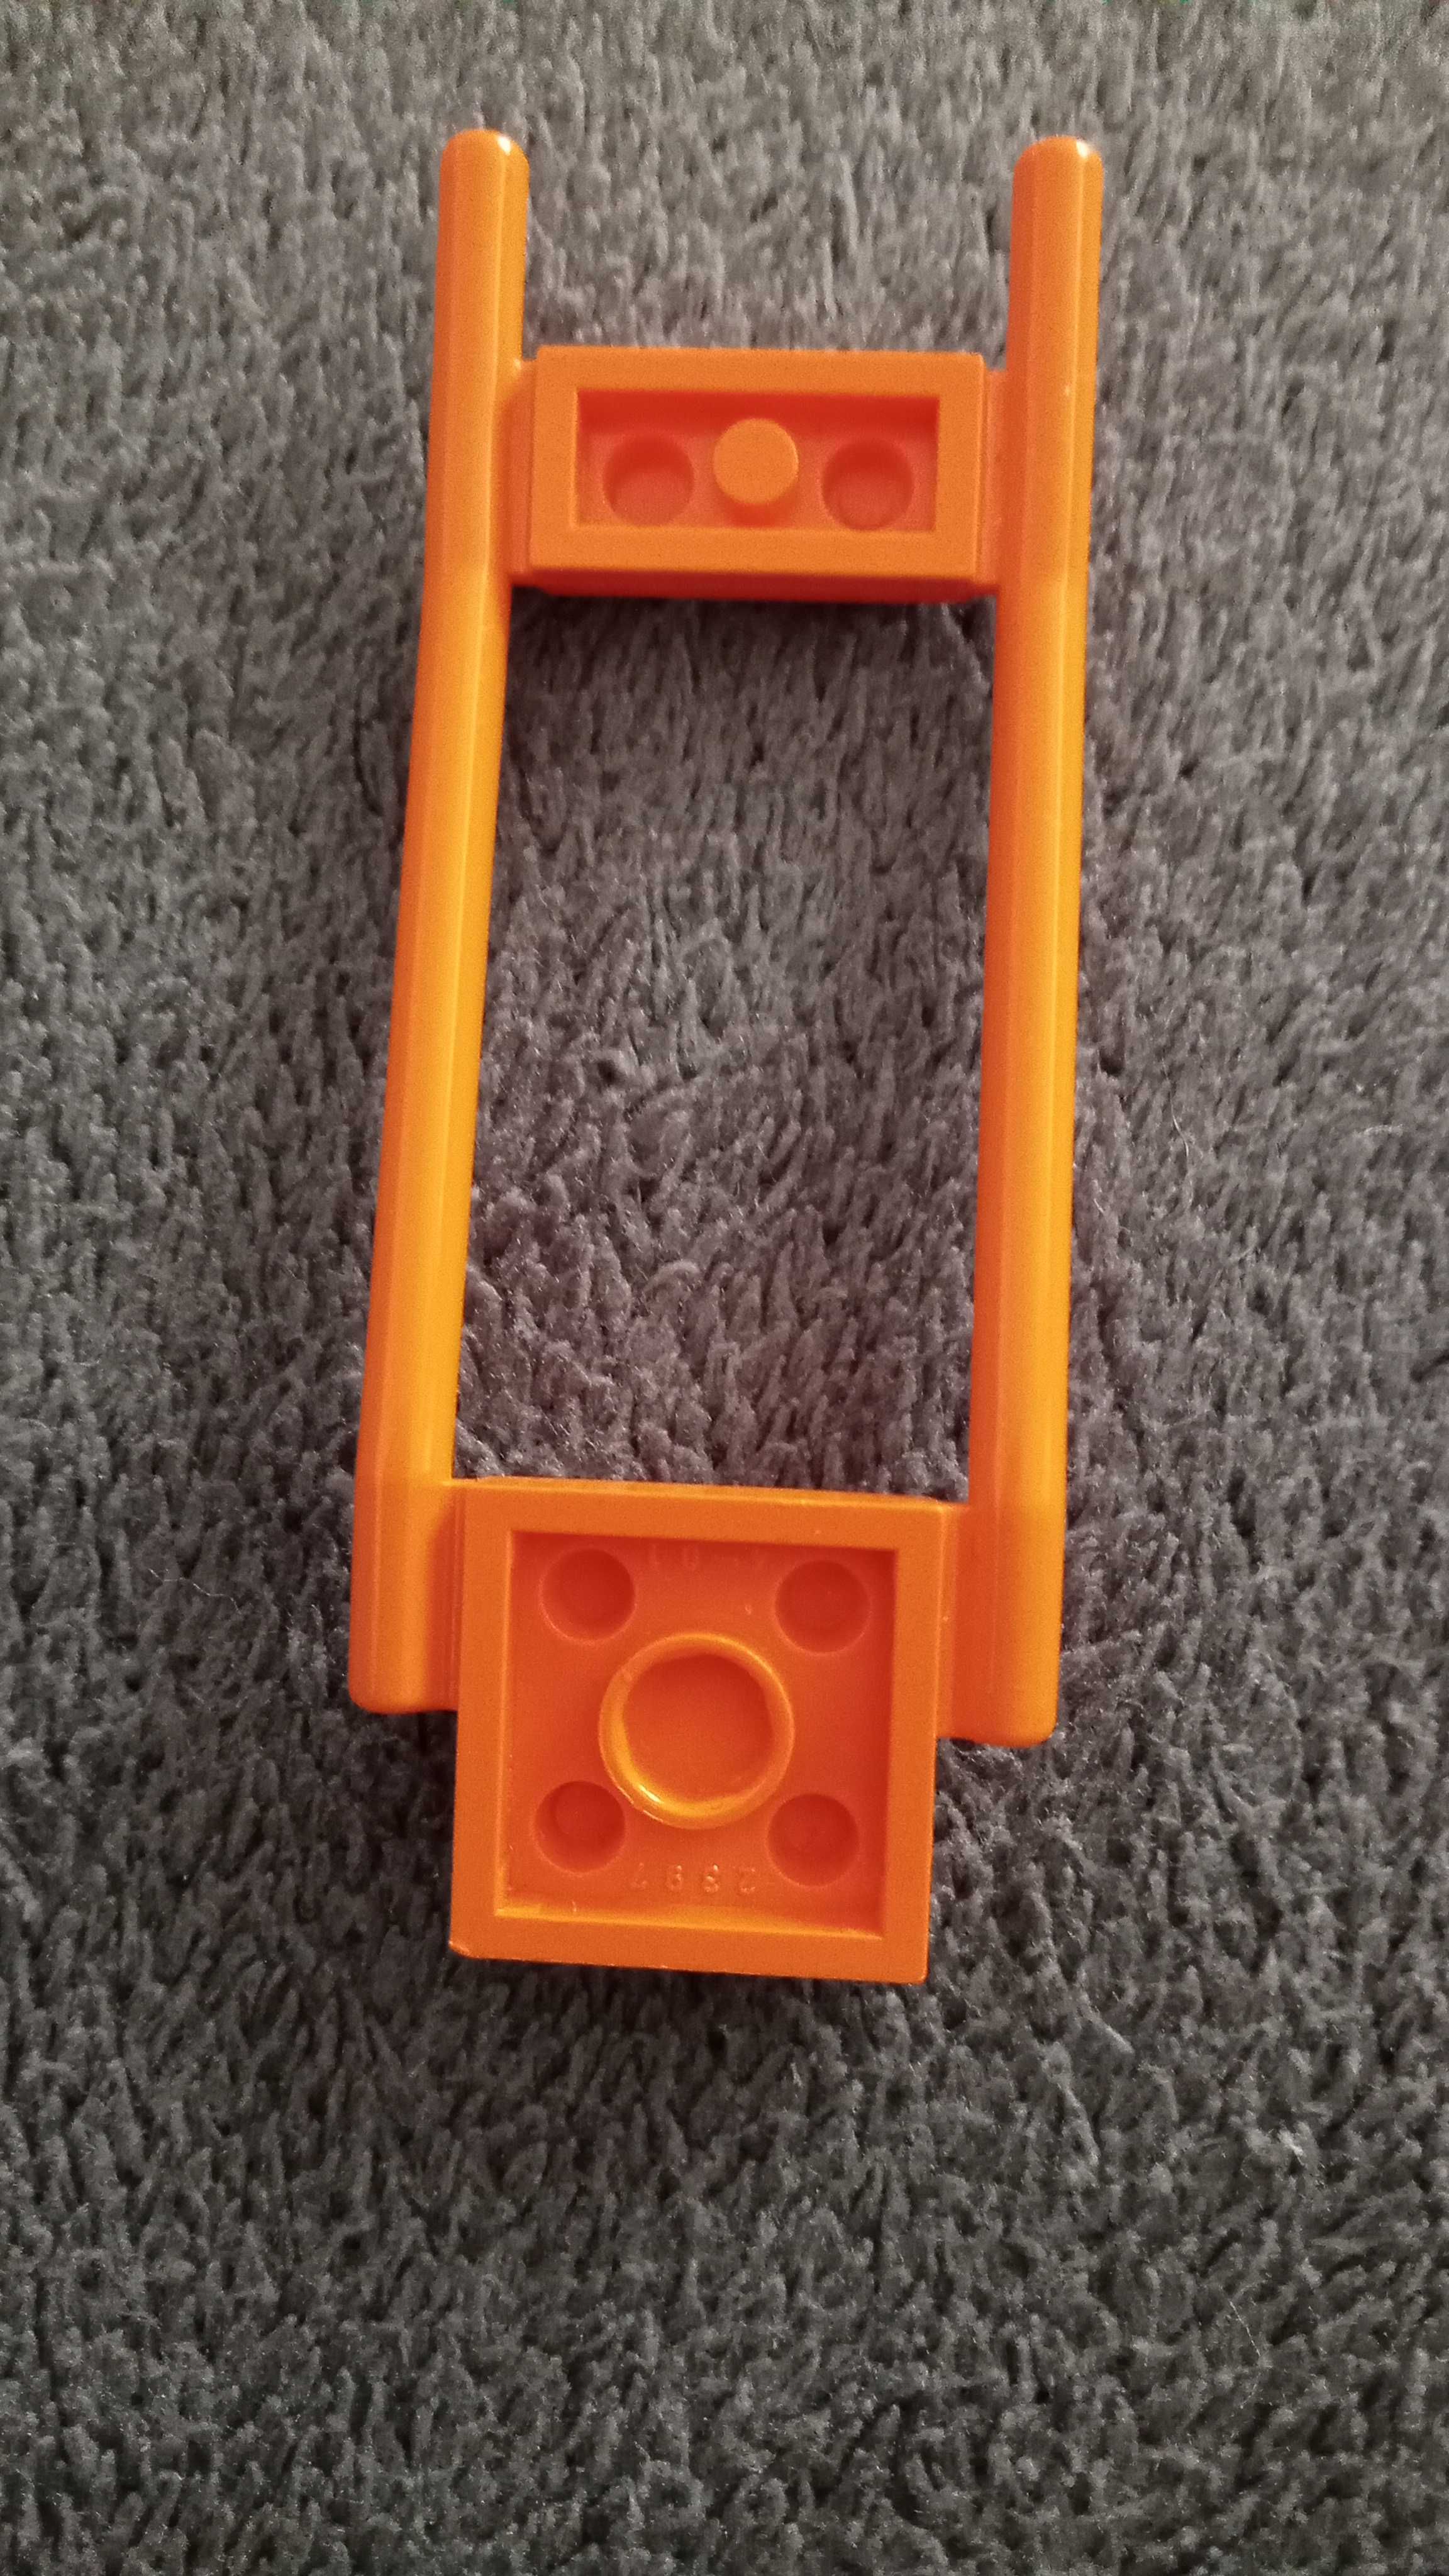 LEGO uprząż dla konia pomarańczowa akcesoria